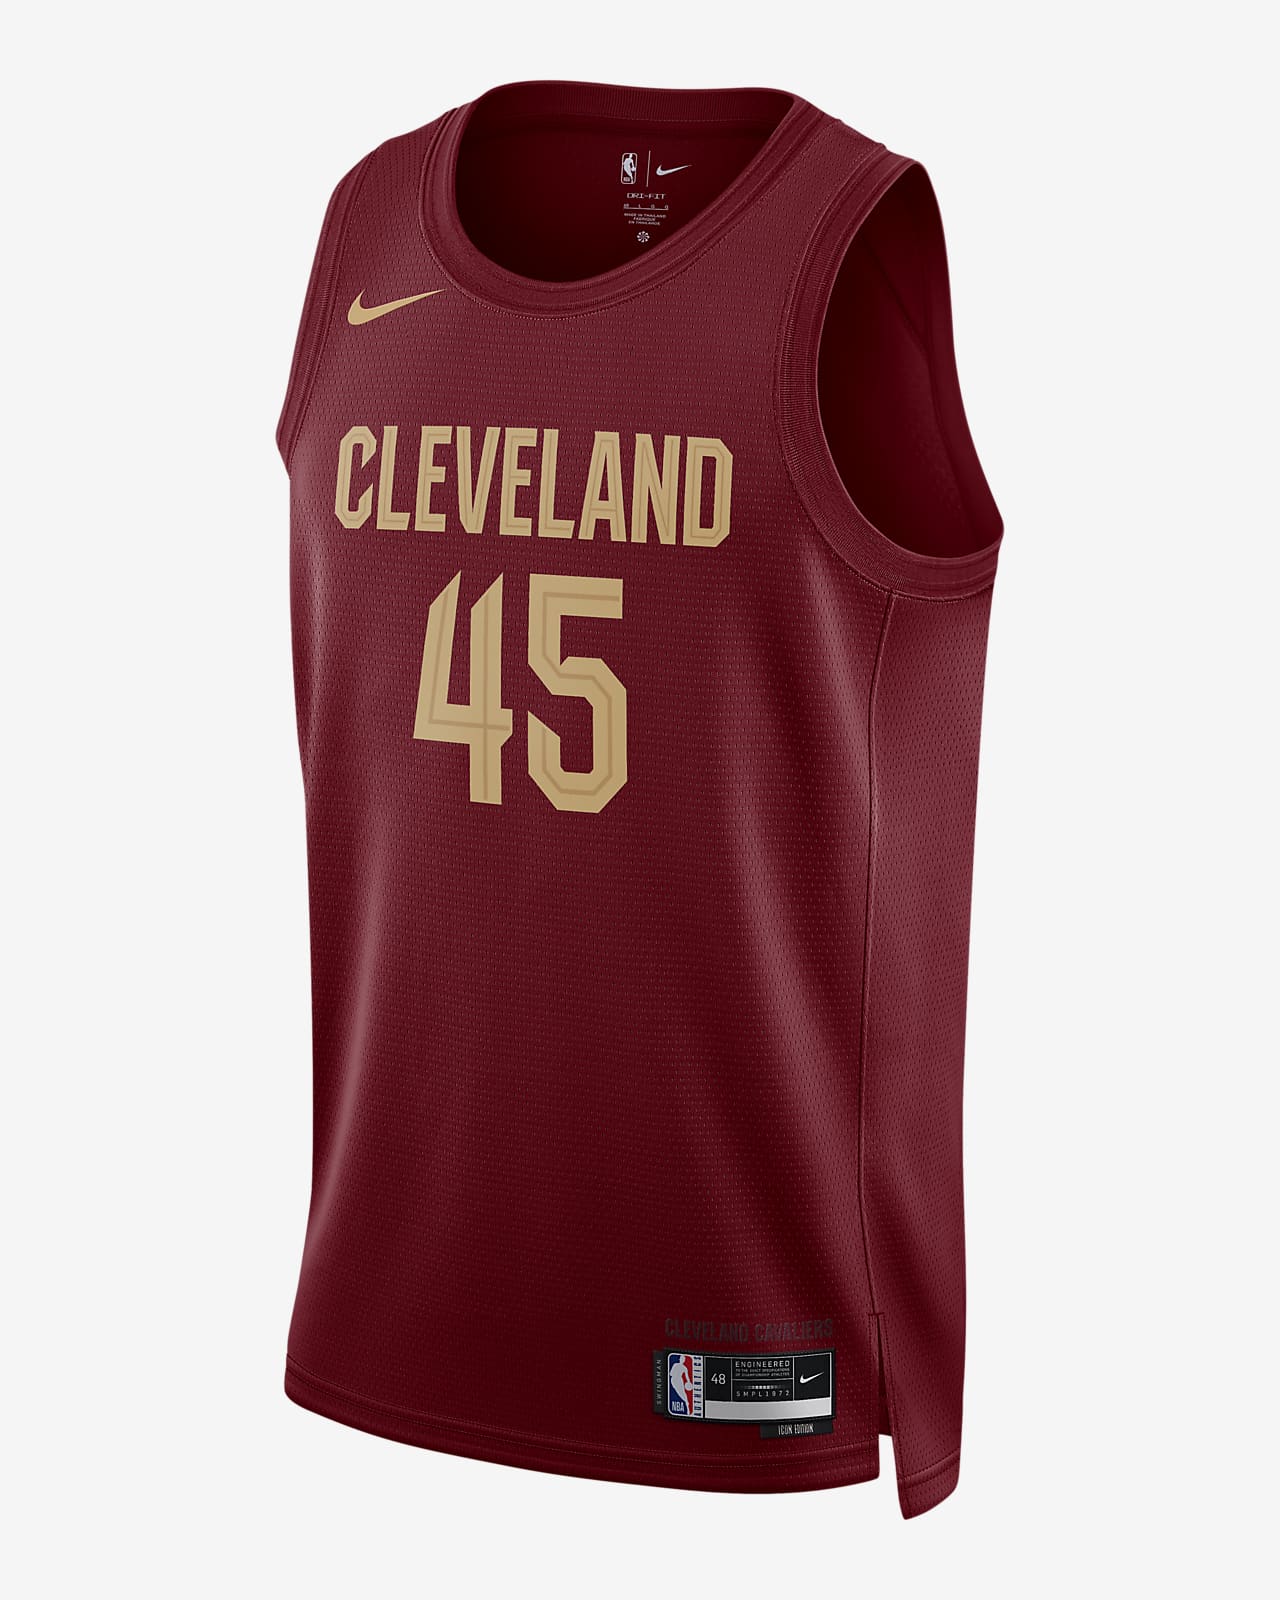 Cleveland Cavaliers NBA Fan Jerseys for sale